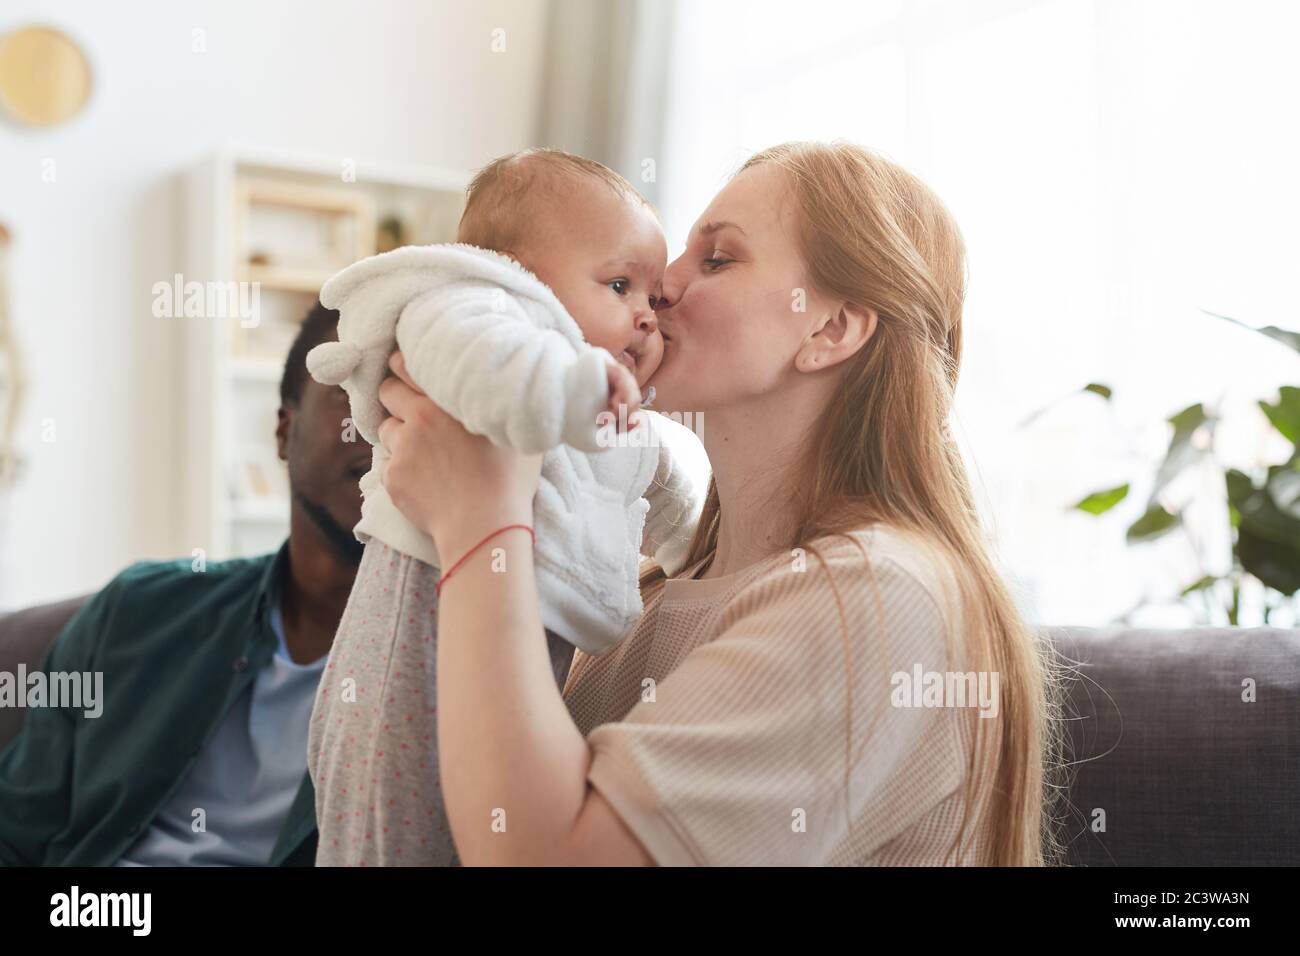 Portrait de famille interraciale heureuse à la maison, foyer sur la femme caucasienne embrassant bébé mignon en premier plan, espace de copie Banque D'Images